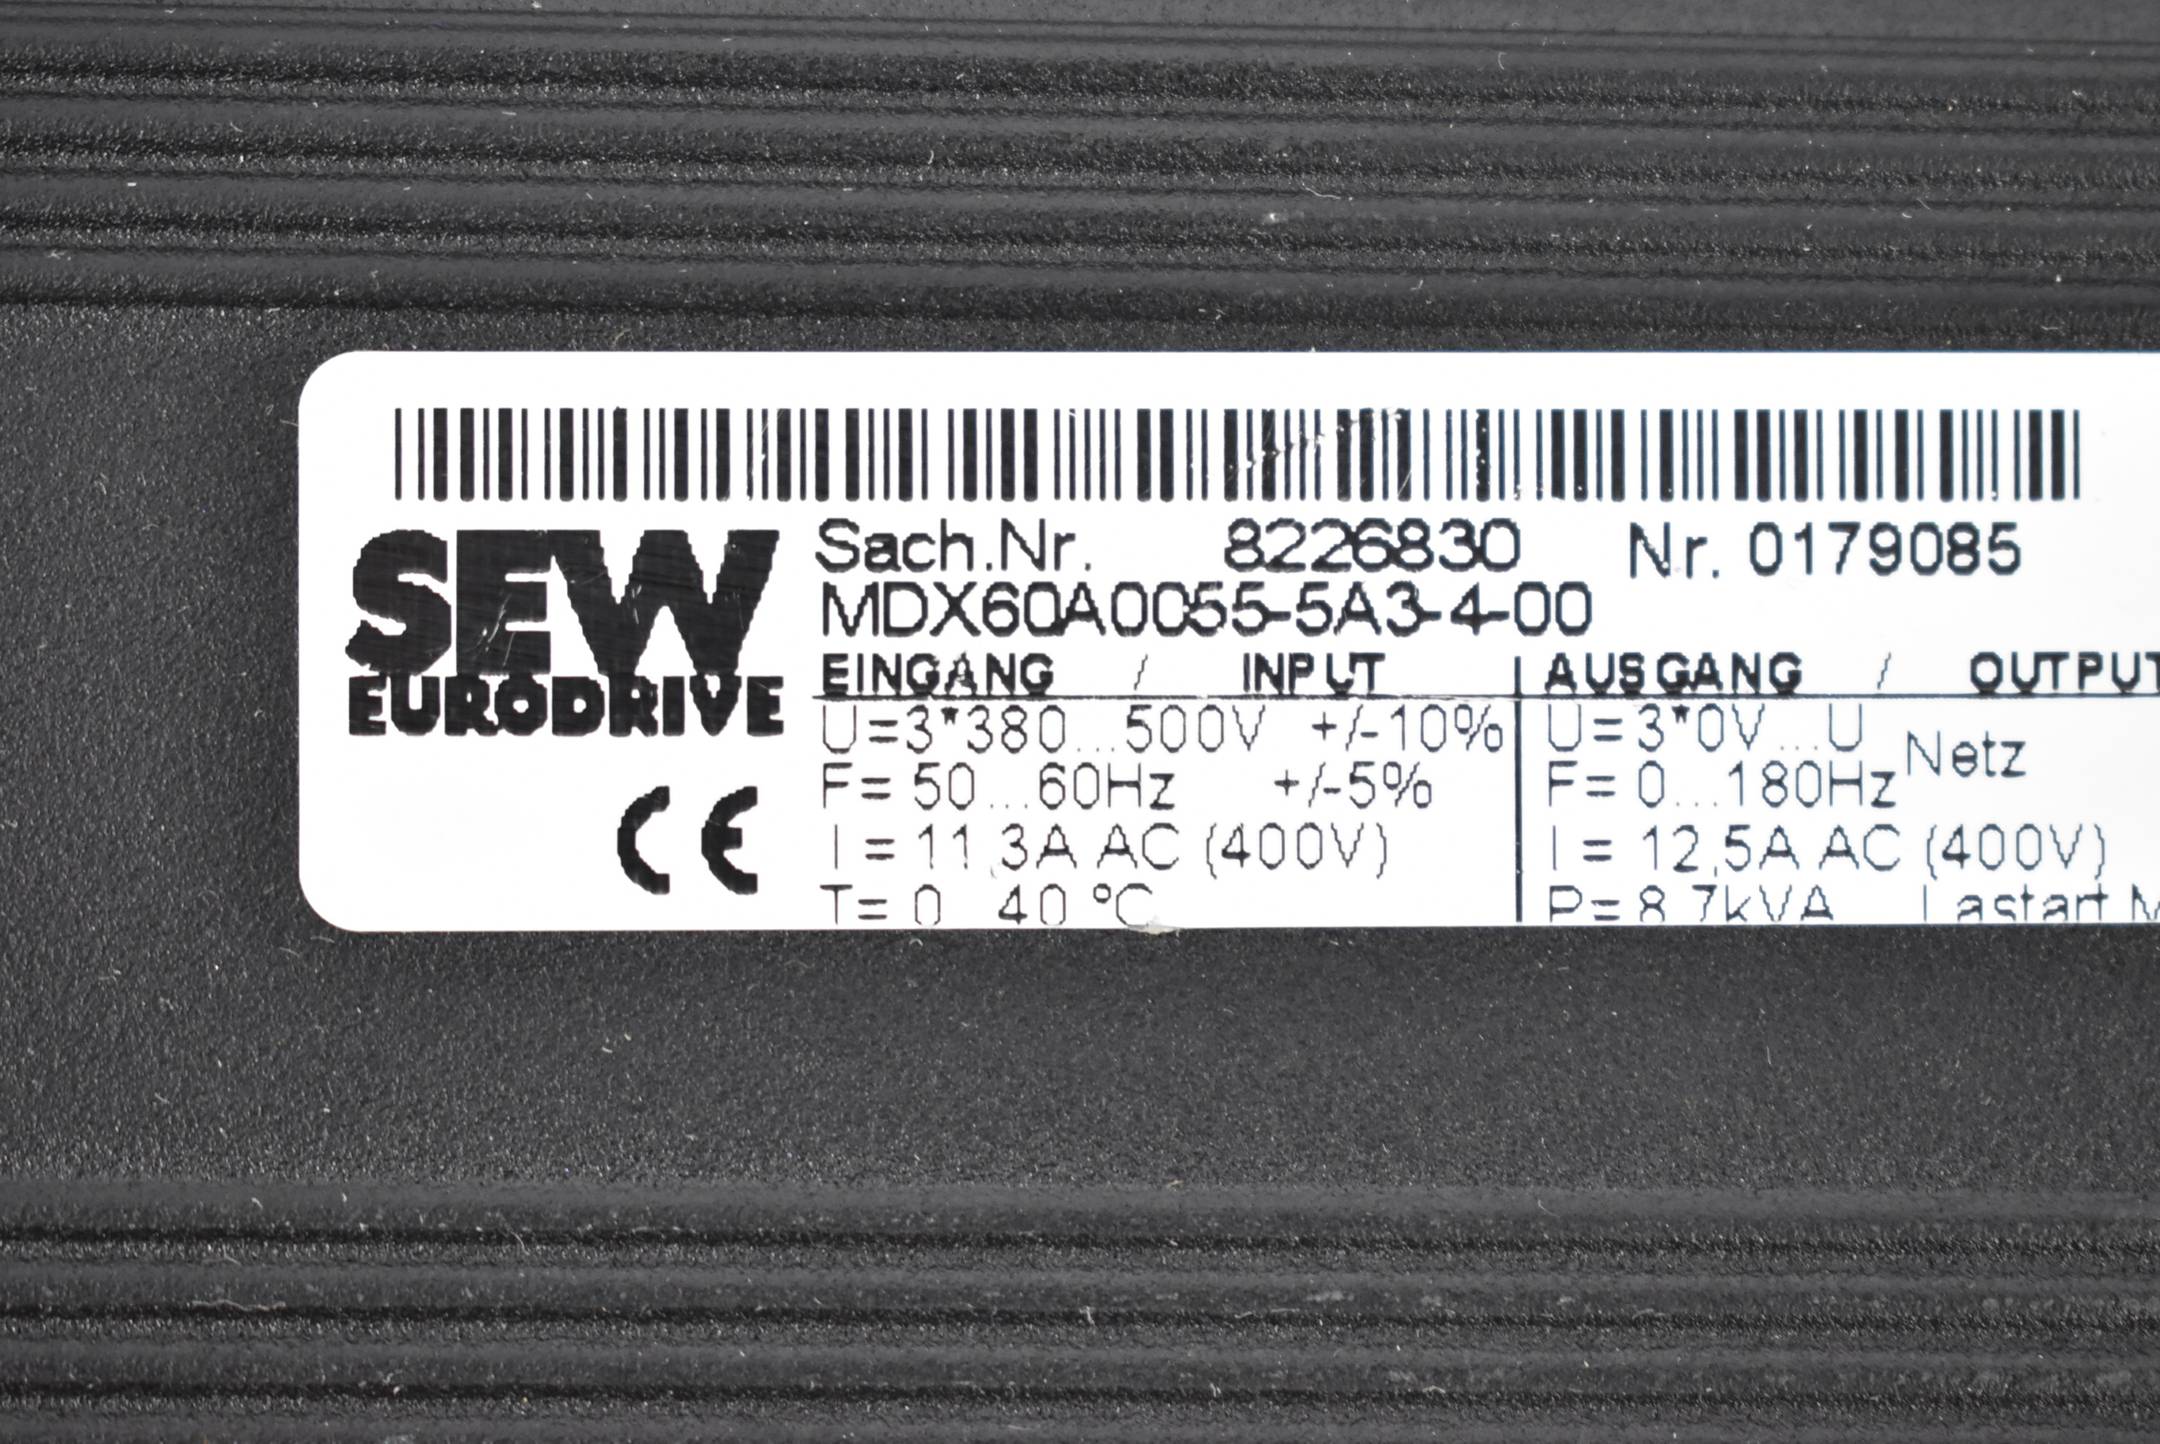 SEW Eurodrive Movidrive Umrichter MCH42A0055-5A3-4-0T + MDX60A0055-5A3-4-00